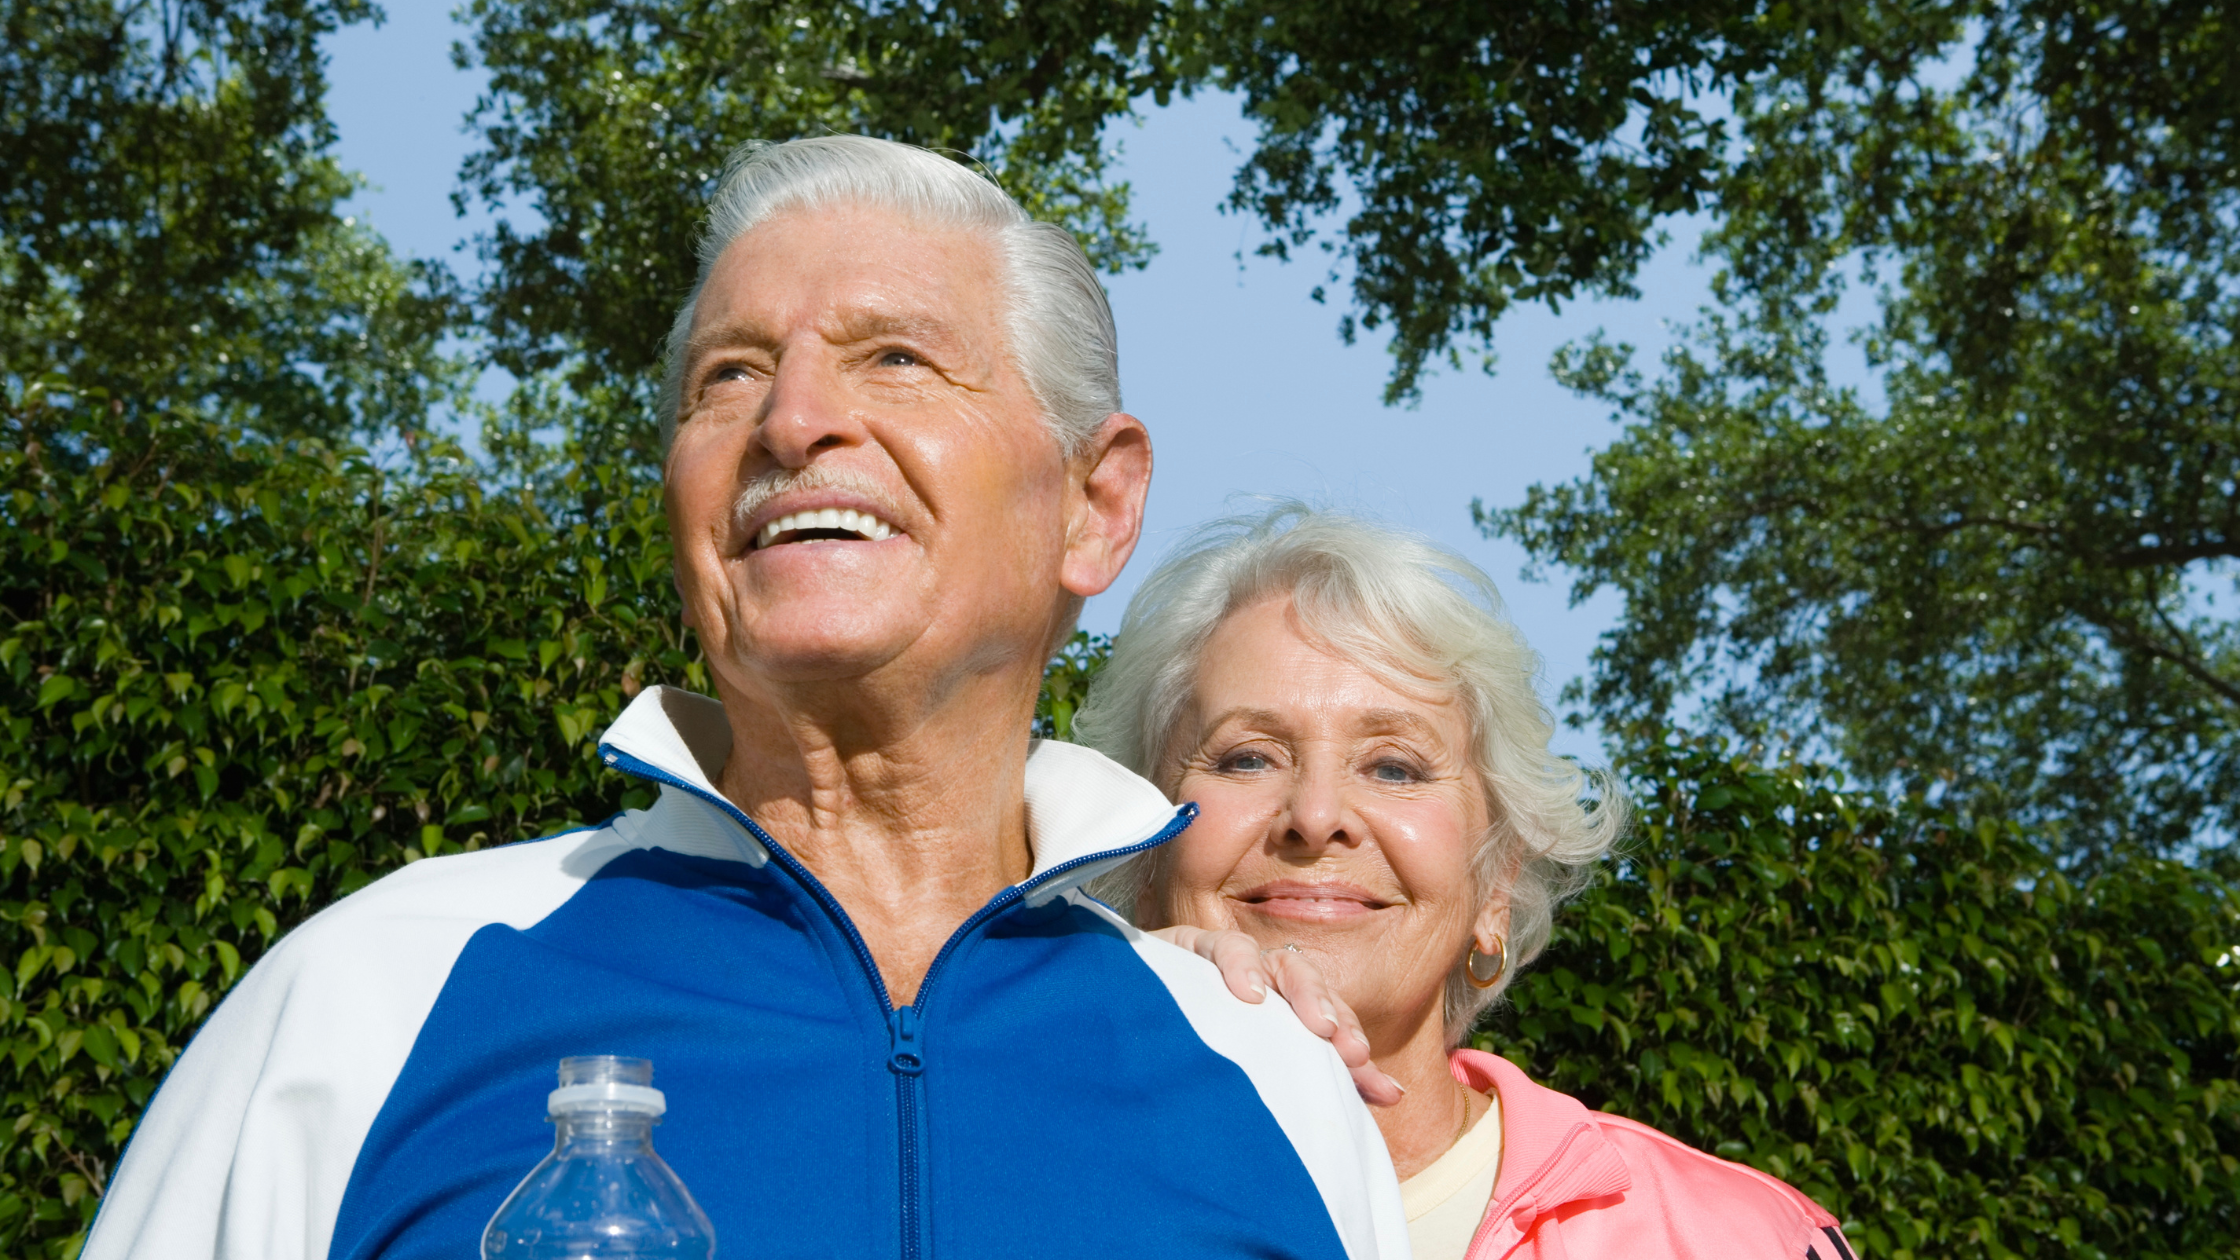 elderly couple walking outside wearing exercise clothing